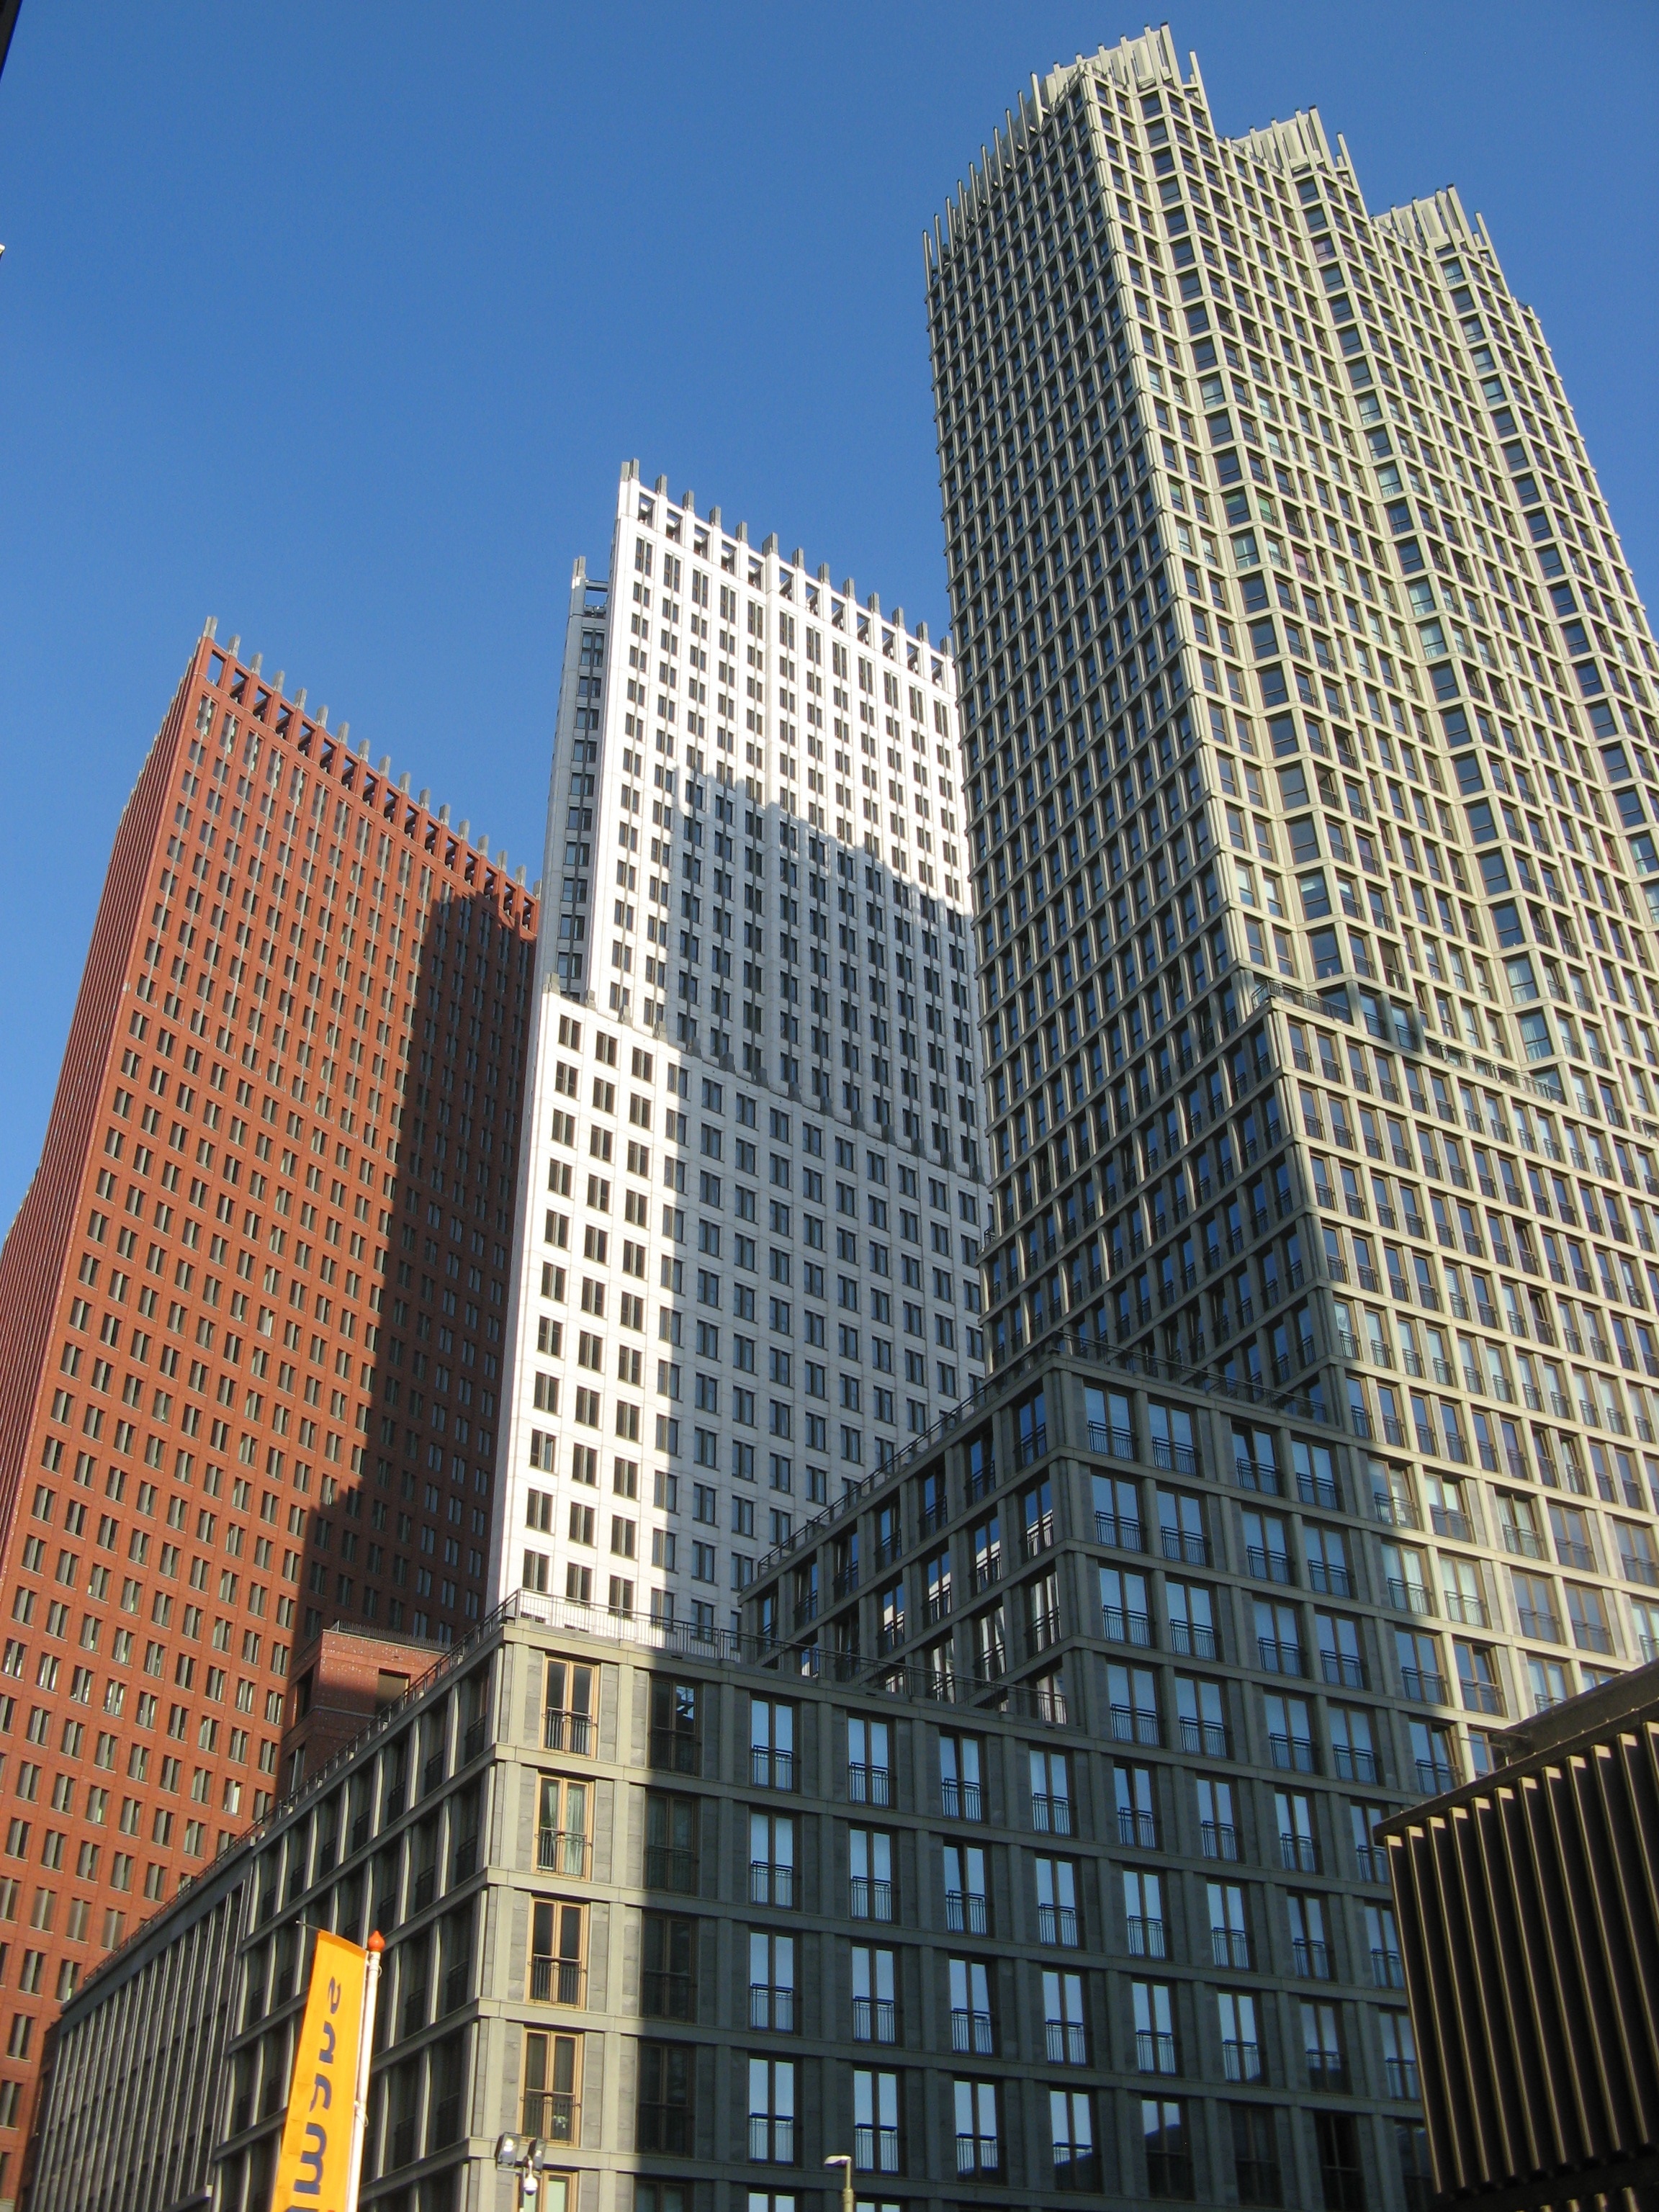 3 buildings